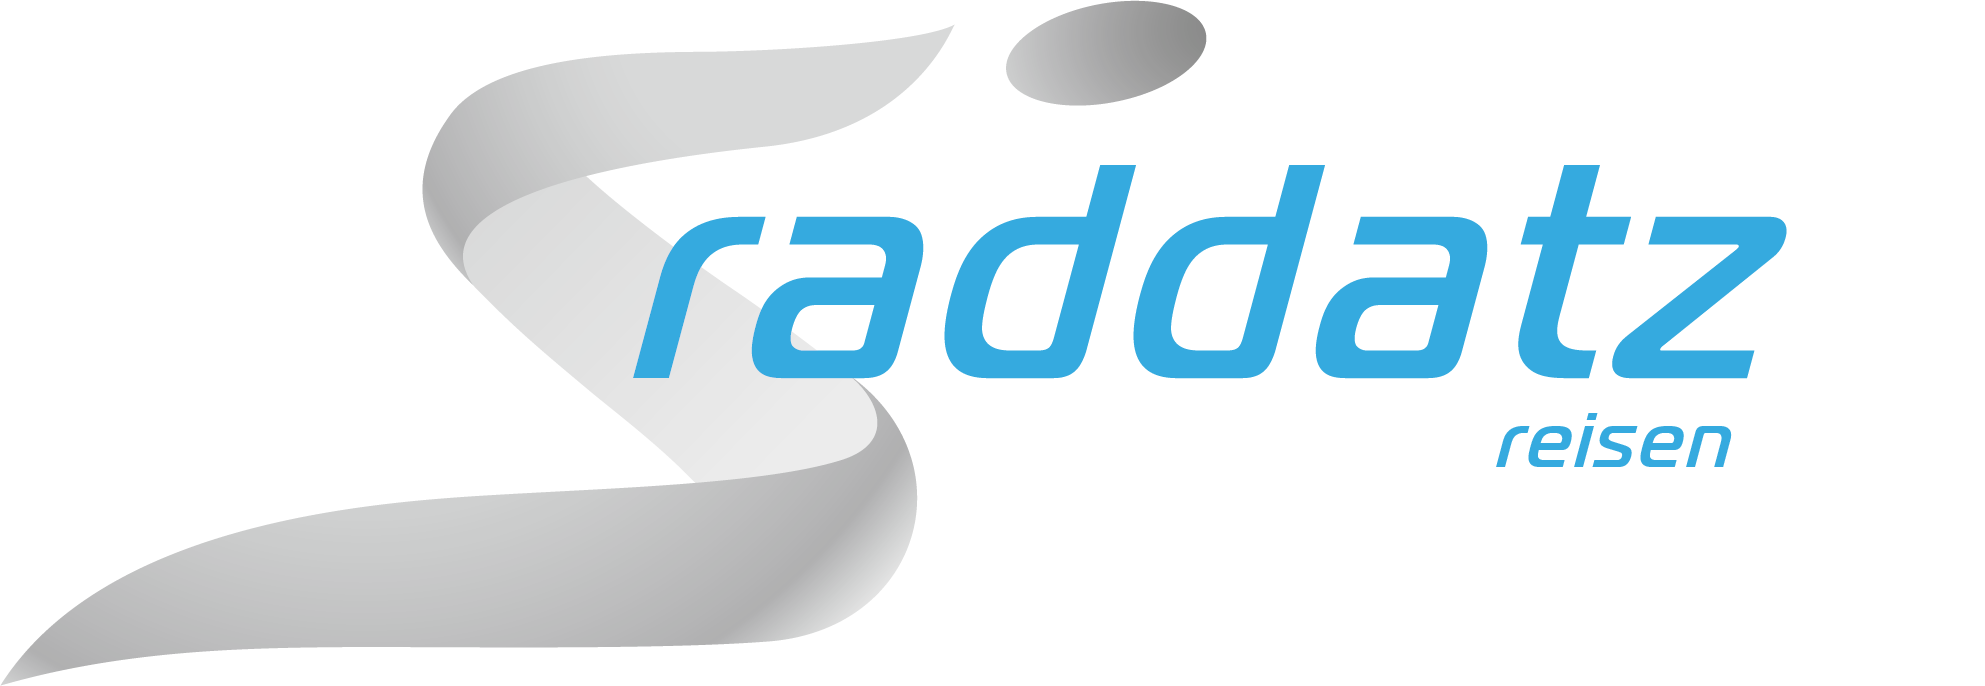 Raddatz Reisen - Logo